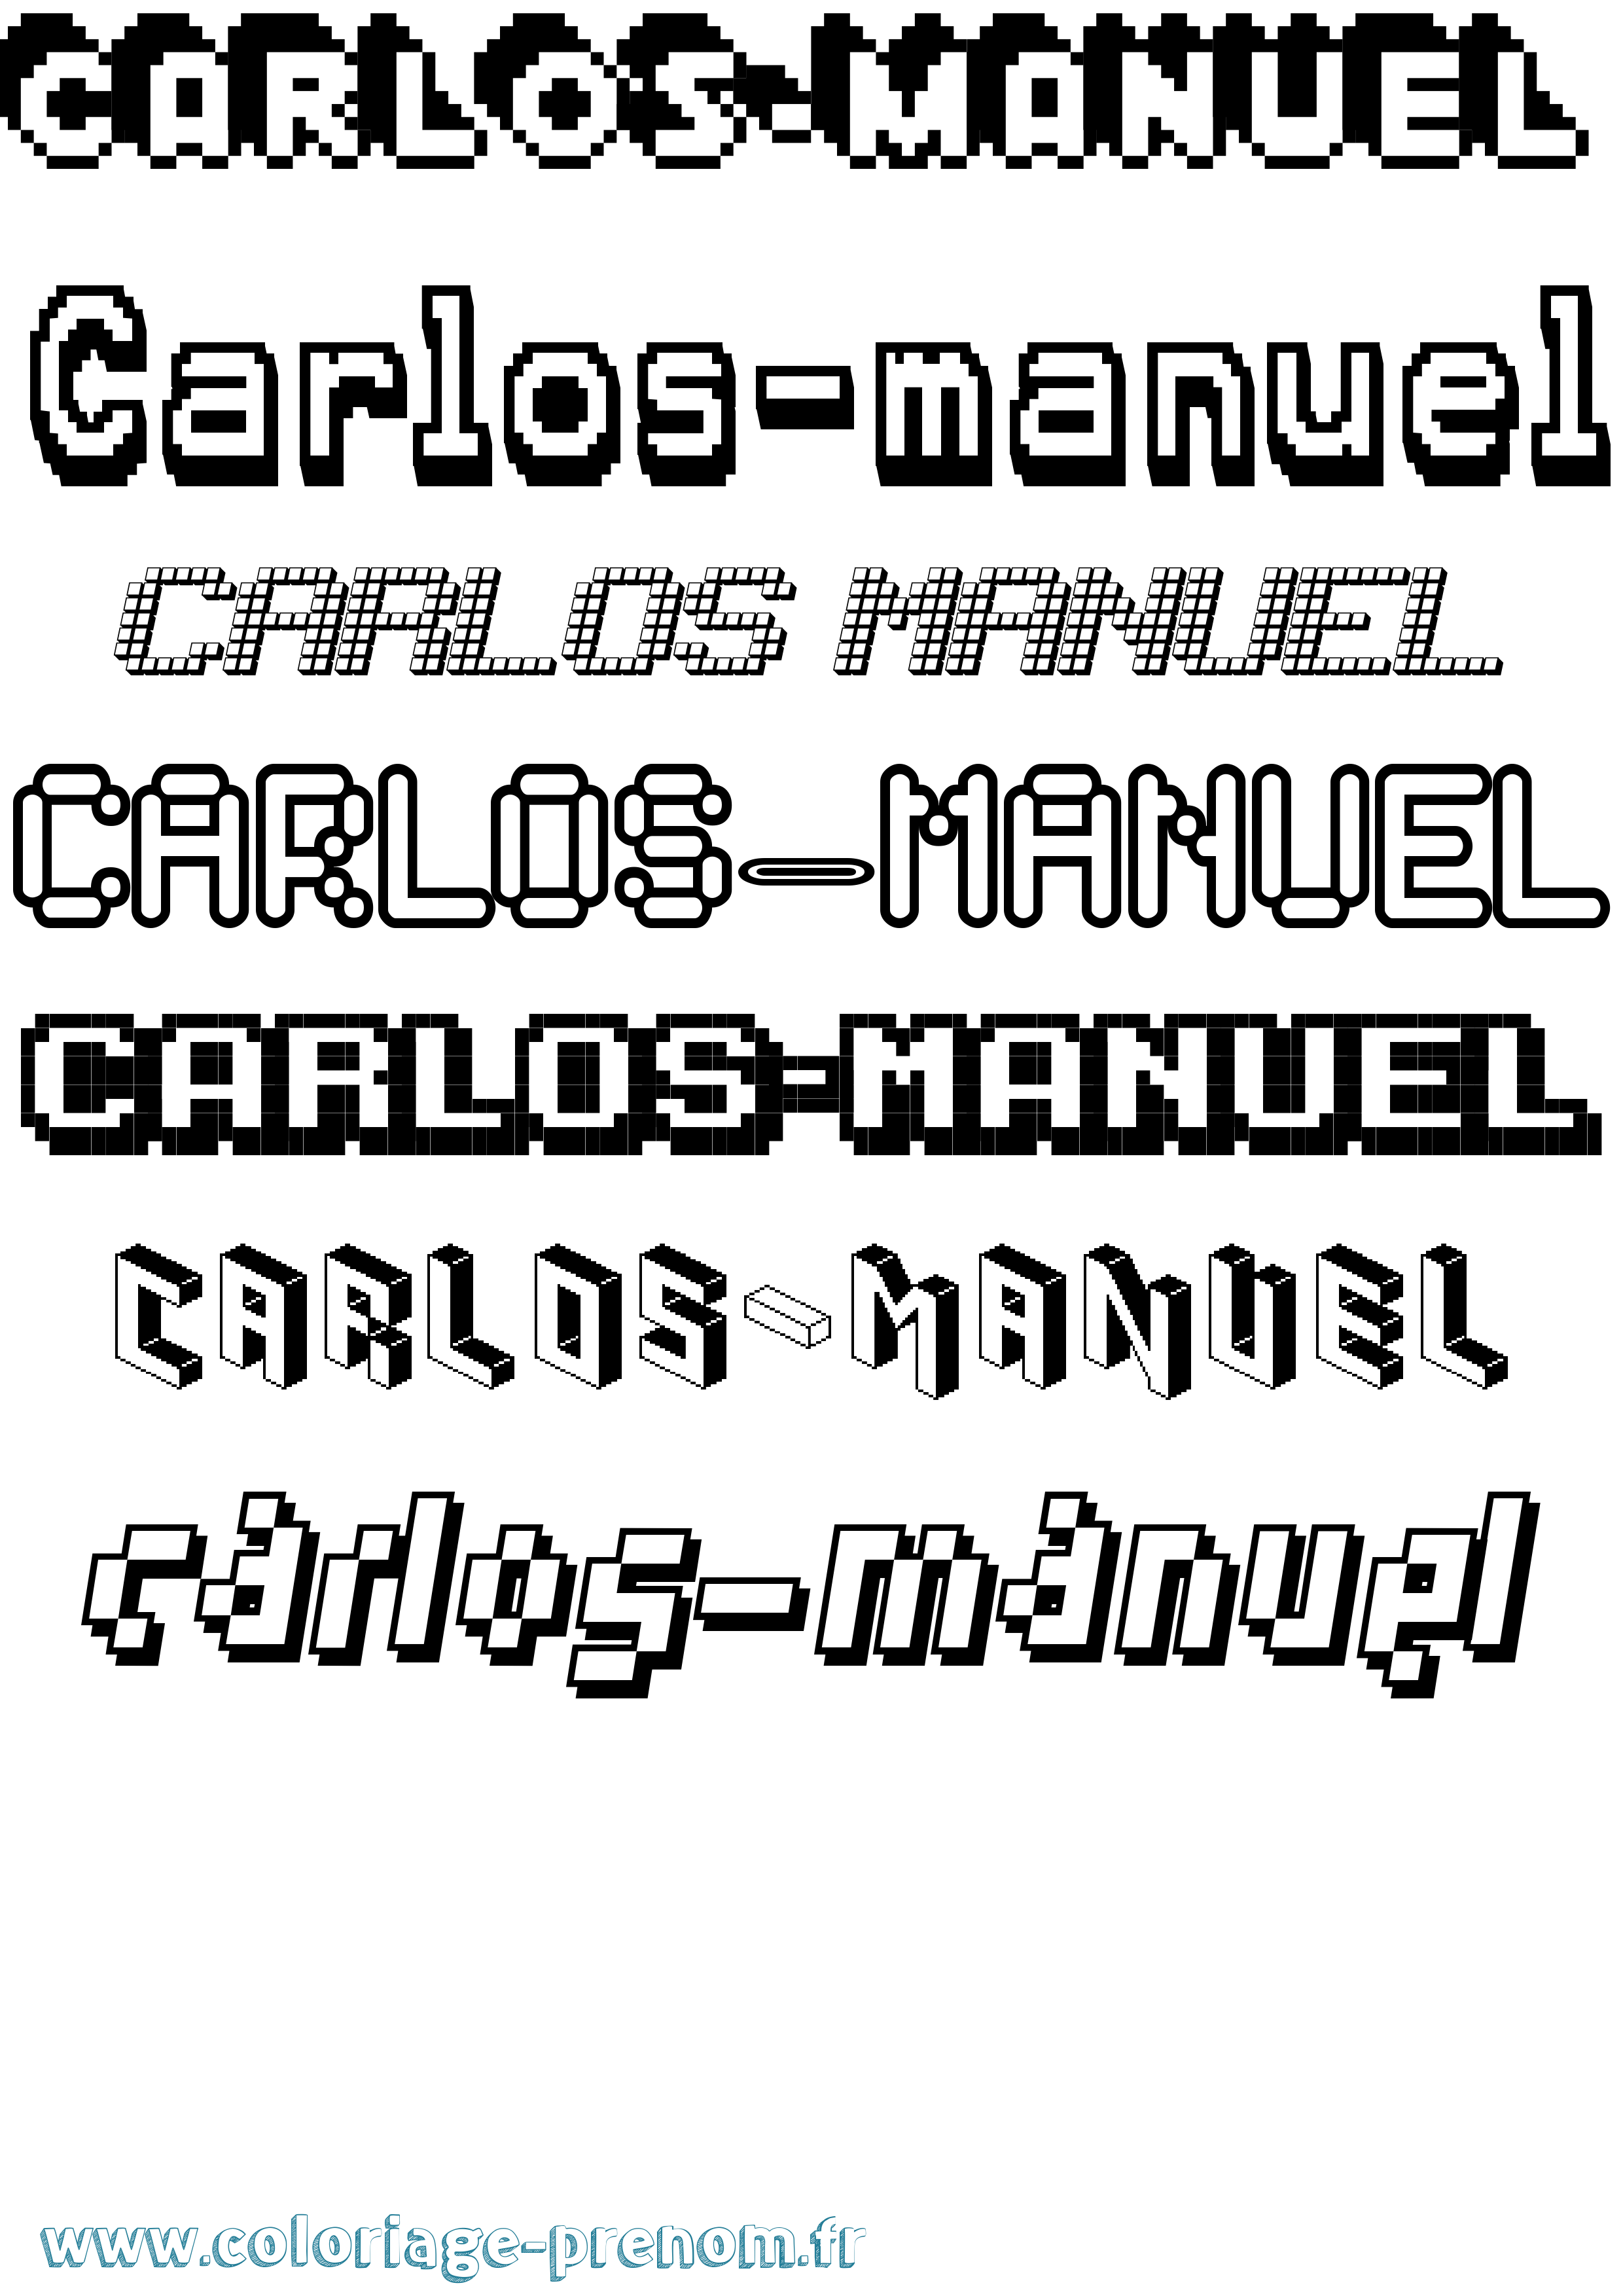 Coloriage prénom Carlos-Manuel Pixel